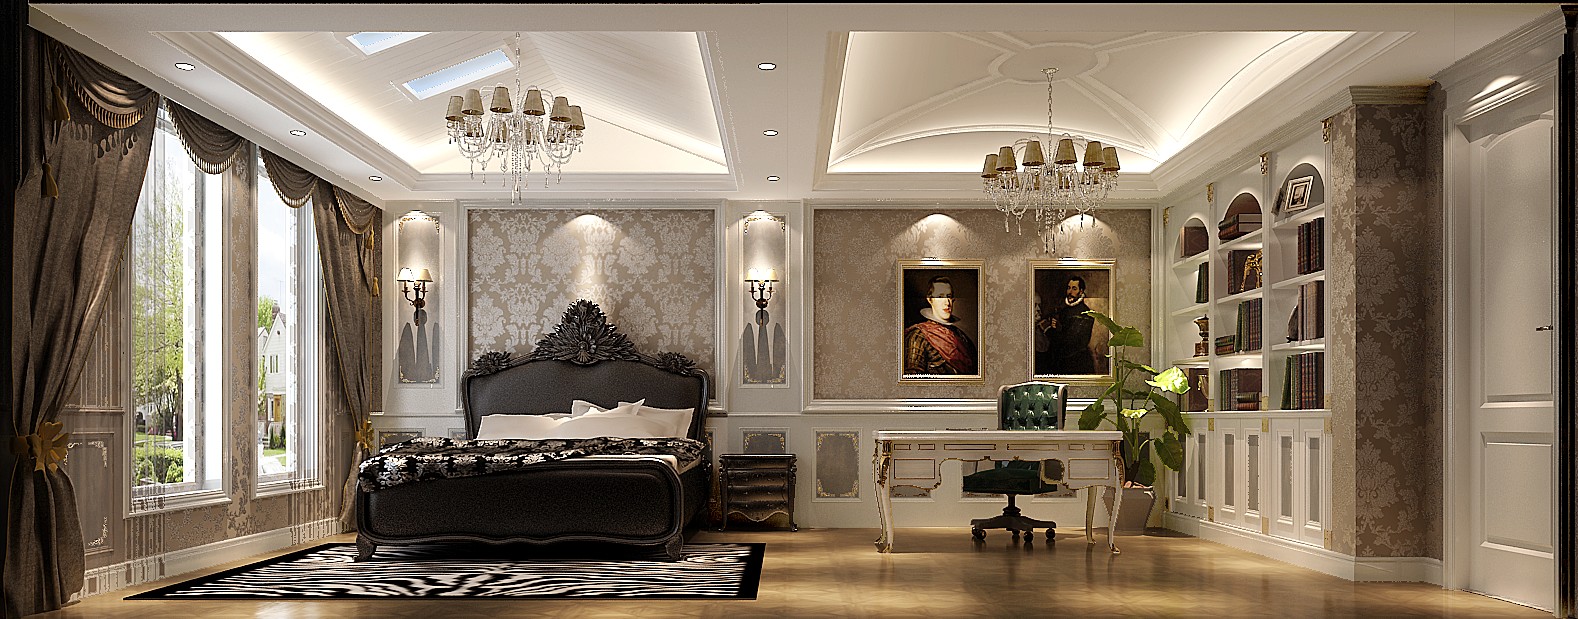 高度国际 别墅 法式 卧室图片来自高度国际在21.1w打造优雅高贵范旭辉御府的分享